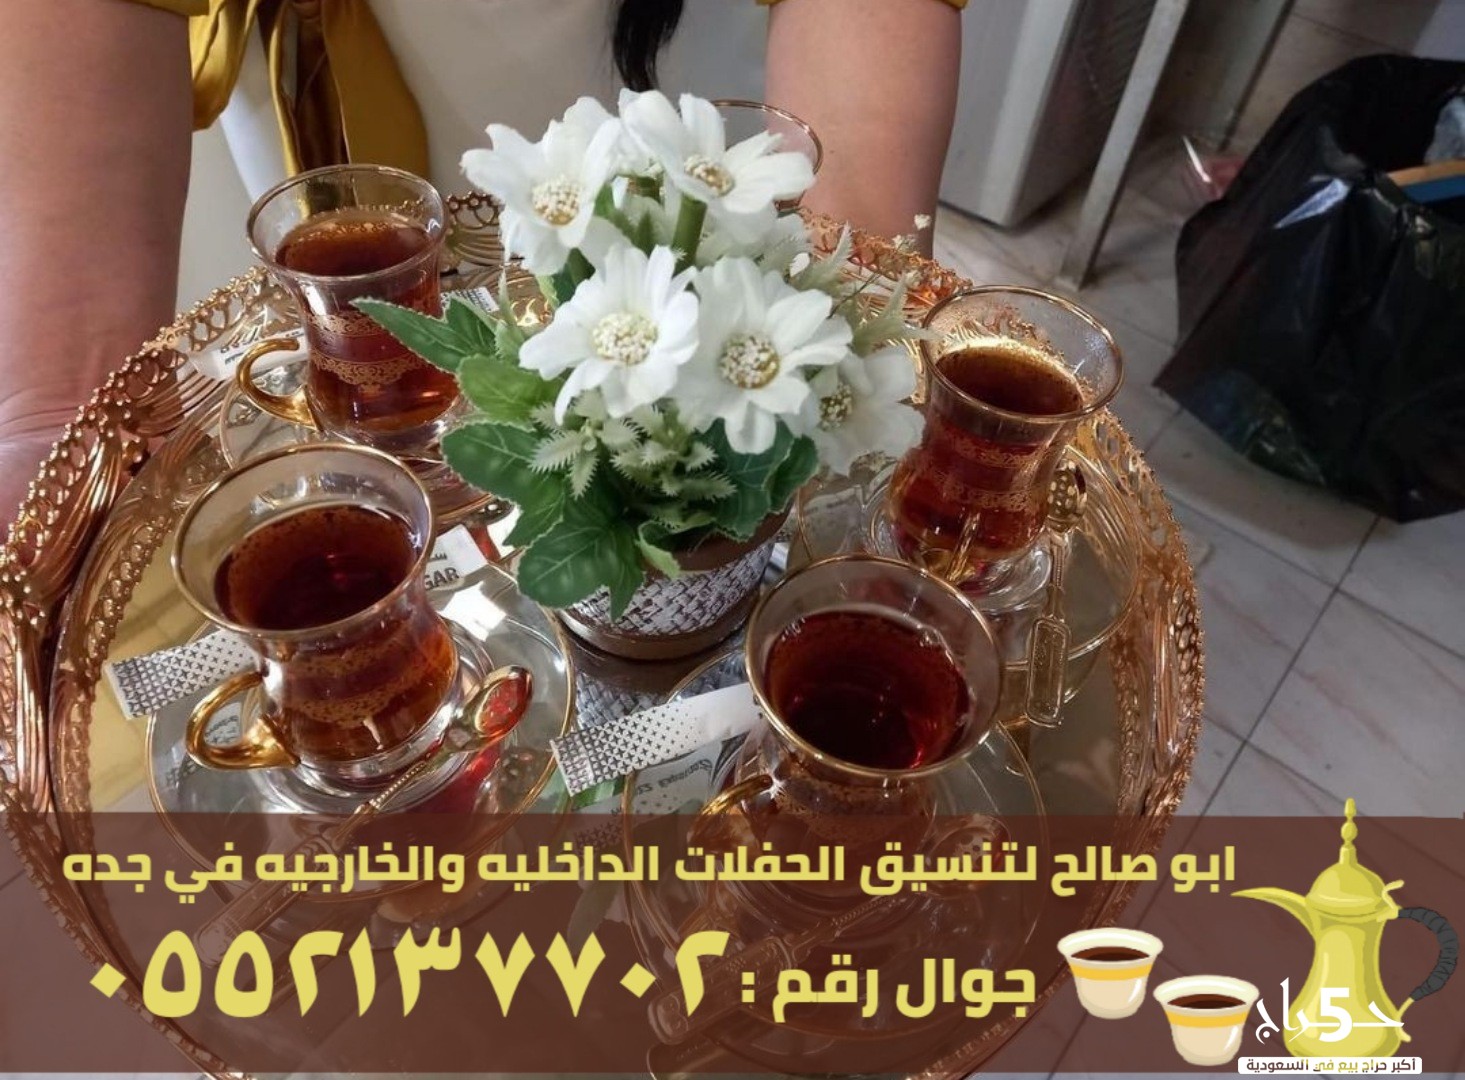 مباشرين قهوة و قهوجيين في جدة, 0552137702